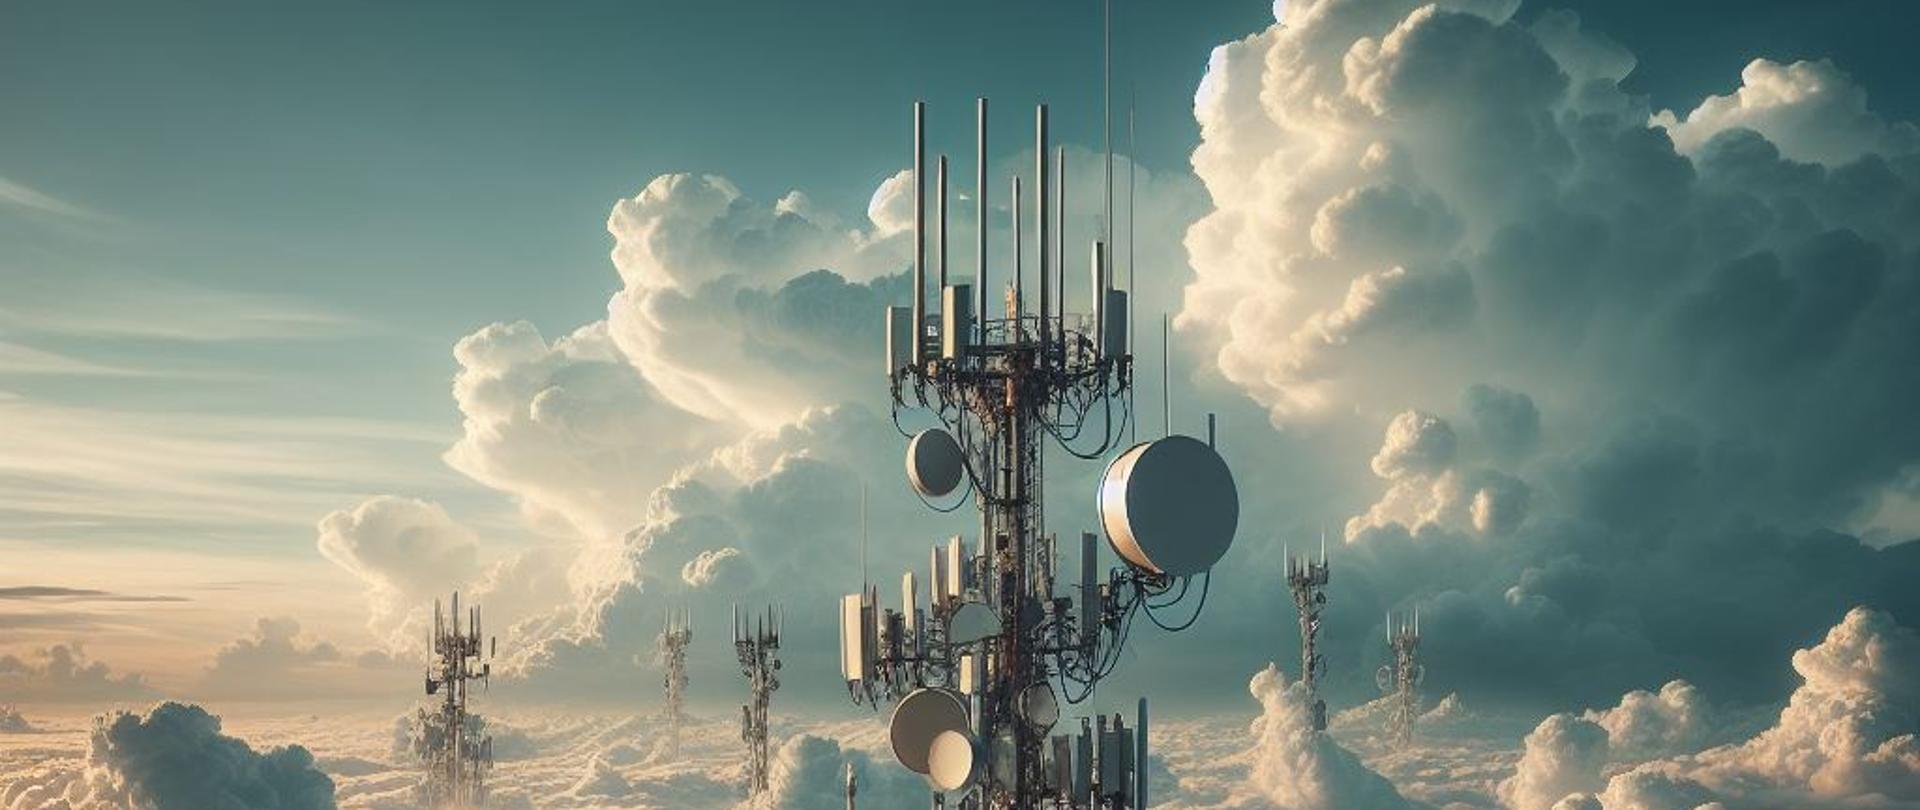 Obraz przedstawia wieżę telekomunikacyjną na tle chmur i nieba. Wieża wyposażona jest w anteny, talerze satelitarne i inne urządzenia komunikacyjne. Niebo w tle jest częściowo zachmurzone, a chmury wydają się gęste i puszyste.